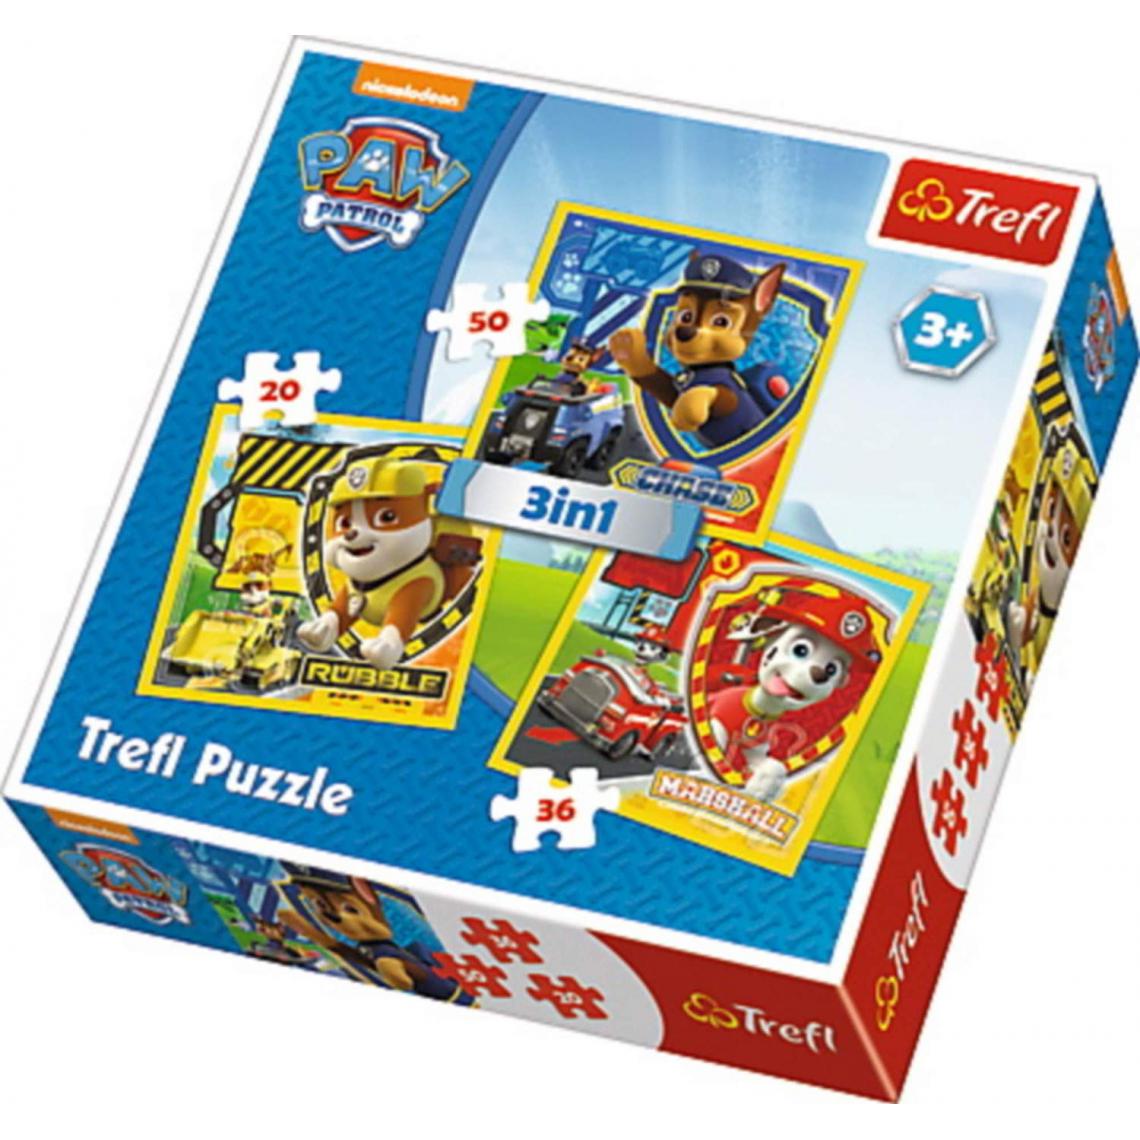 Trefl - trefl- Puzzle 3 en 1 modèle Paw Patrol 20-36-50 pièces, 34839, Multicolore - Animaux